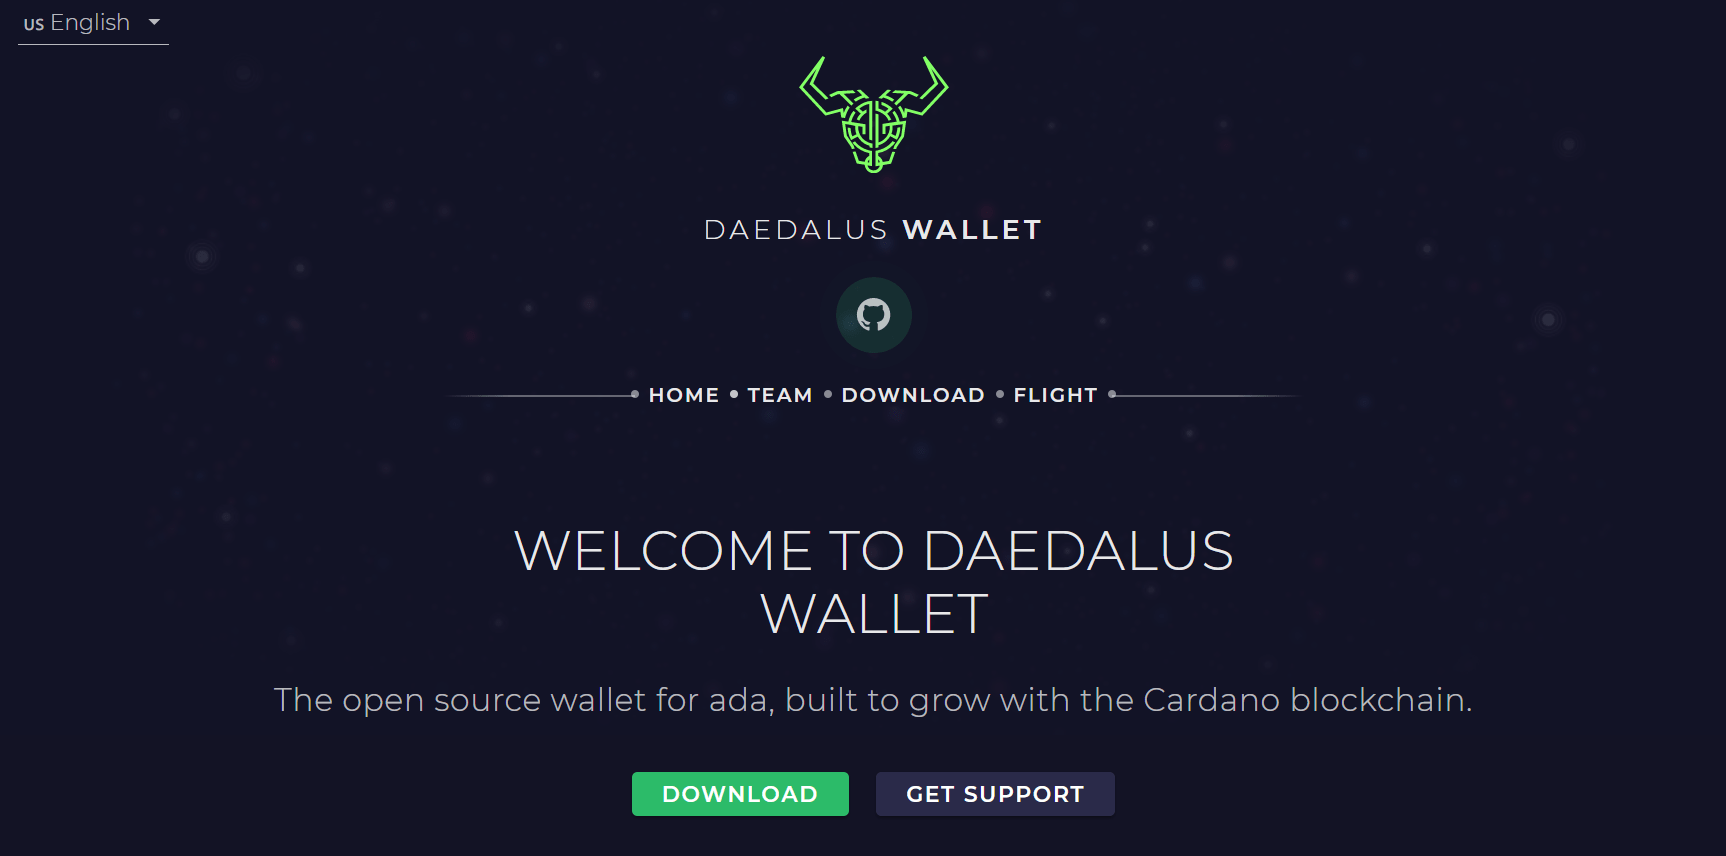 Cardano's native Daedalus wallet